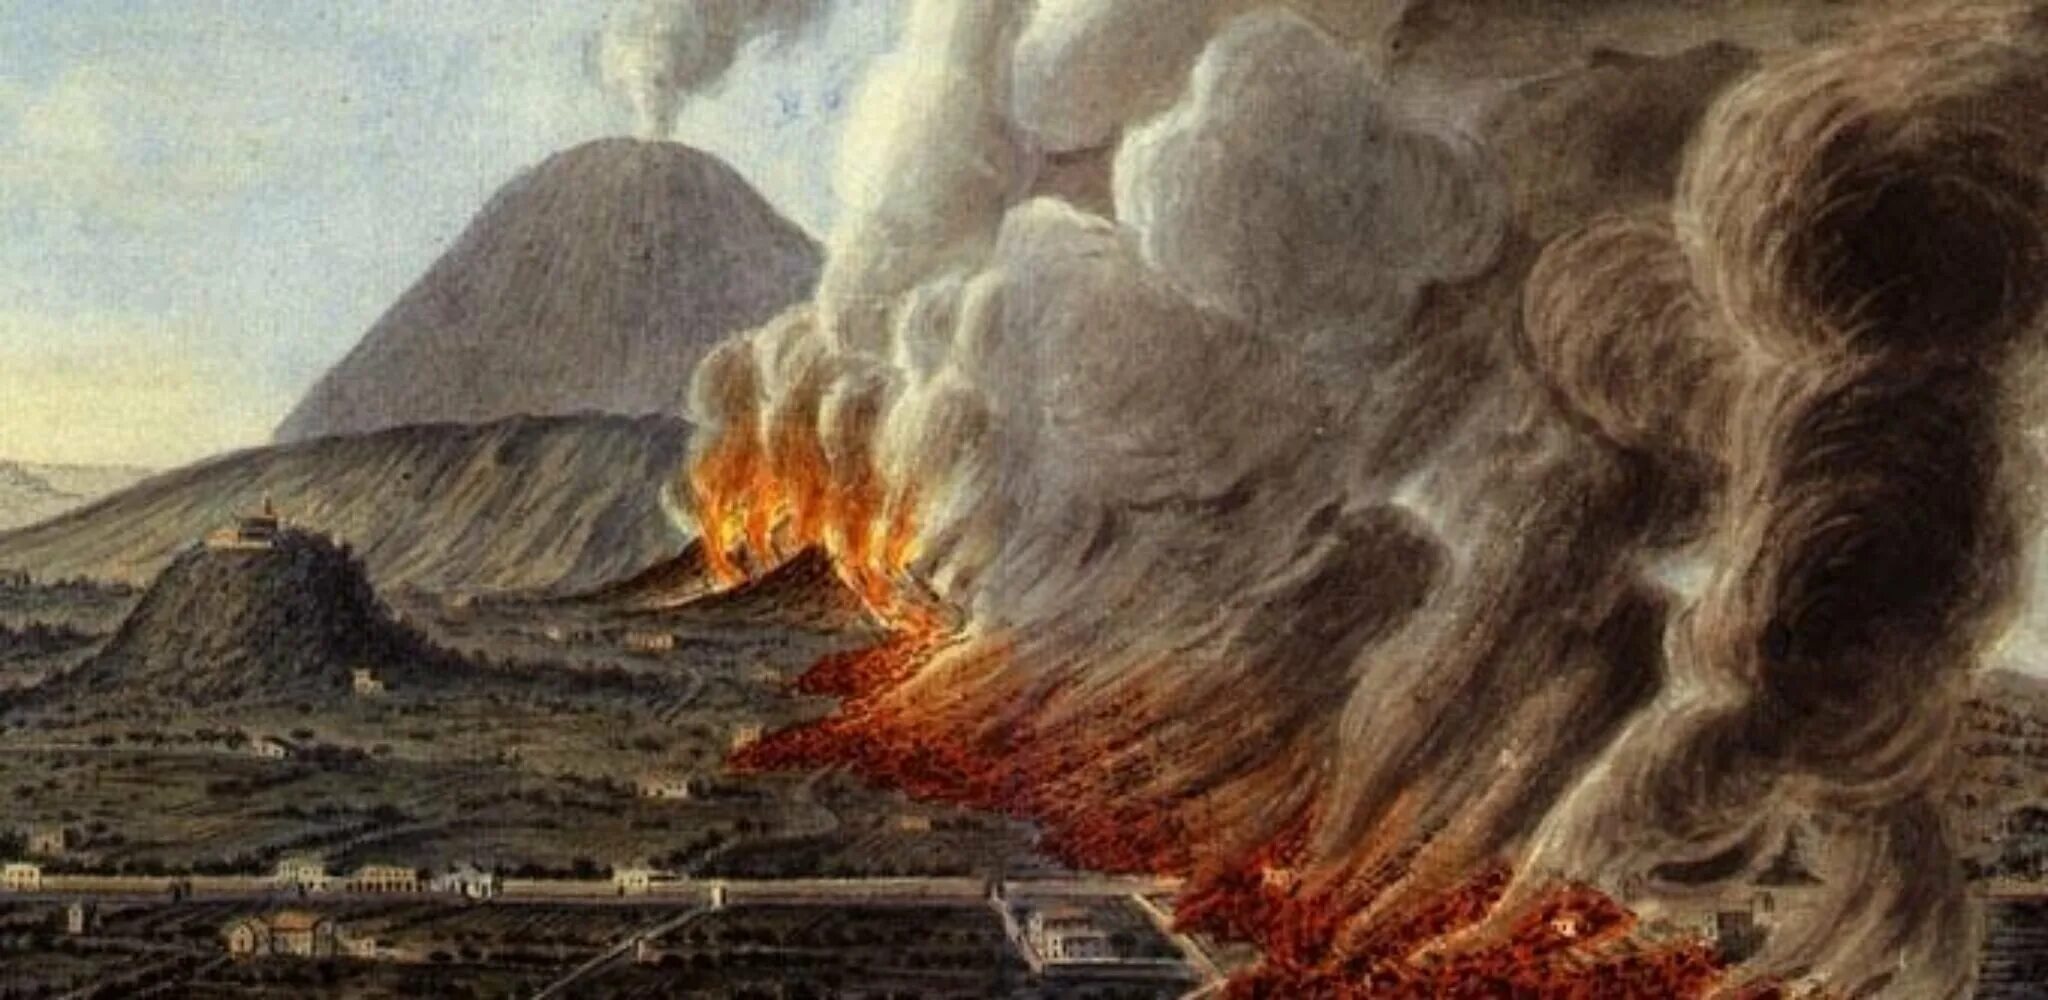 Извержение вулкана Везувия в 79 году. Извержение Везувия Помпеи. Извержение Везувия в 79 Помпеи. Вулкан Везувий извержение Помпеи. Извержение вулкана уничтожило город